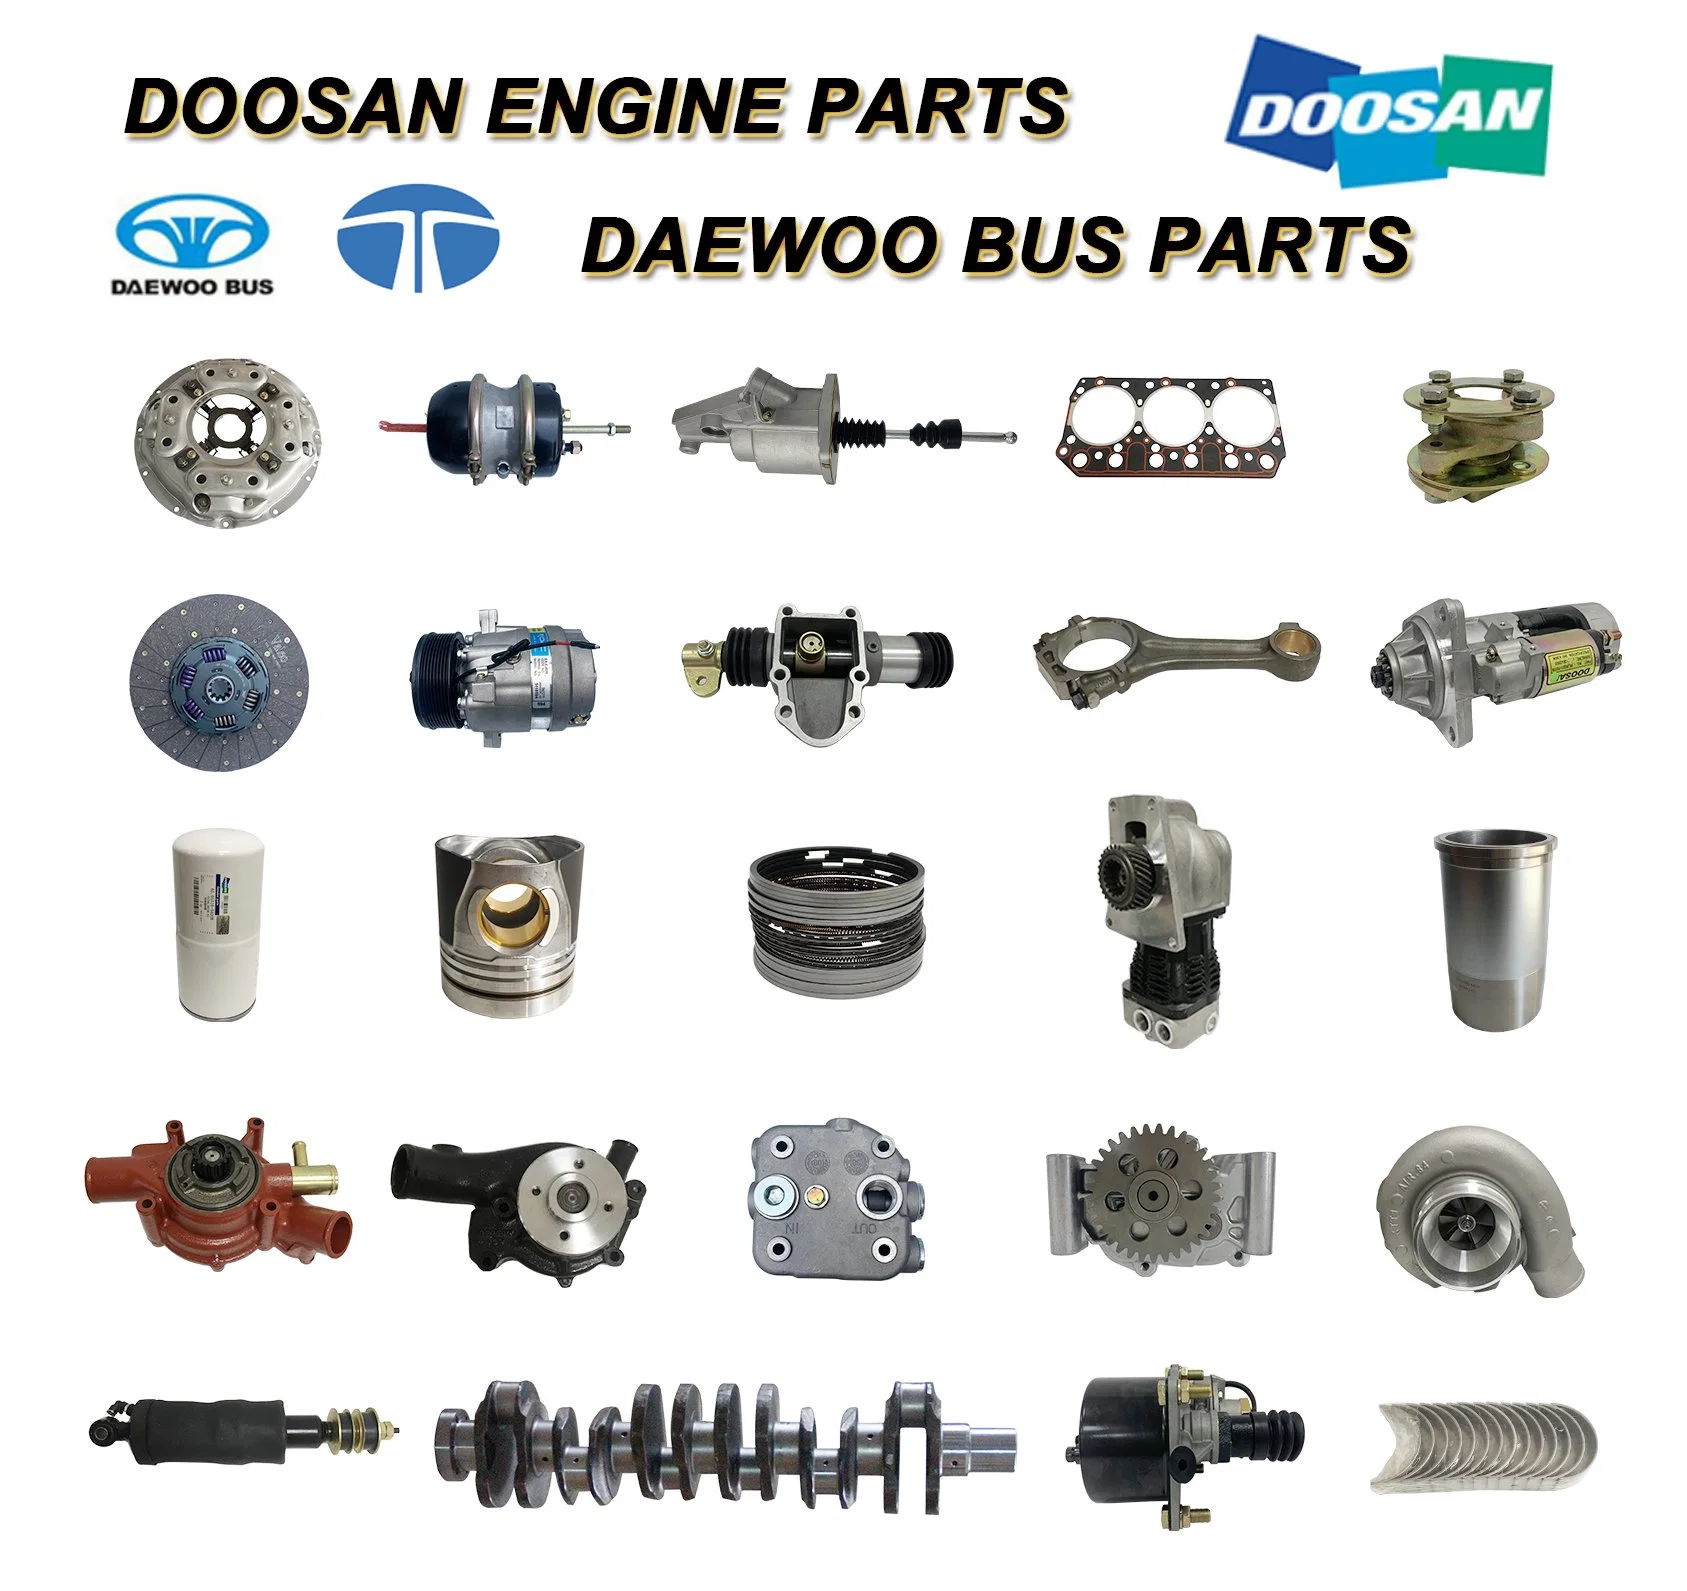 De12ti Doosan Engine Part Injection Pipe 65.10301-7004 Daewoo Bus/Truck/Excavator/Generator Parts